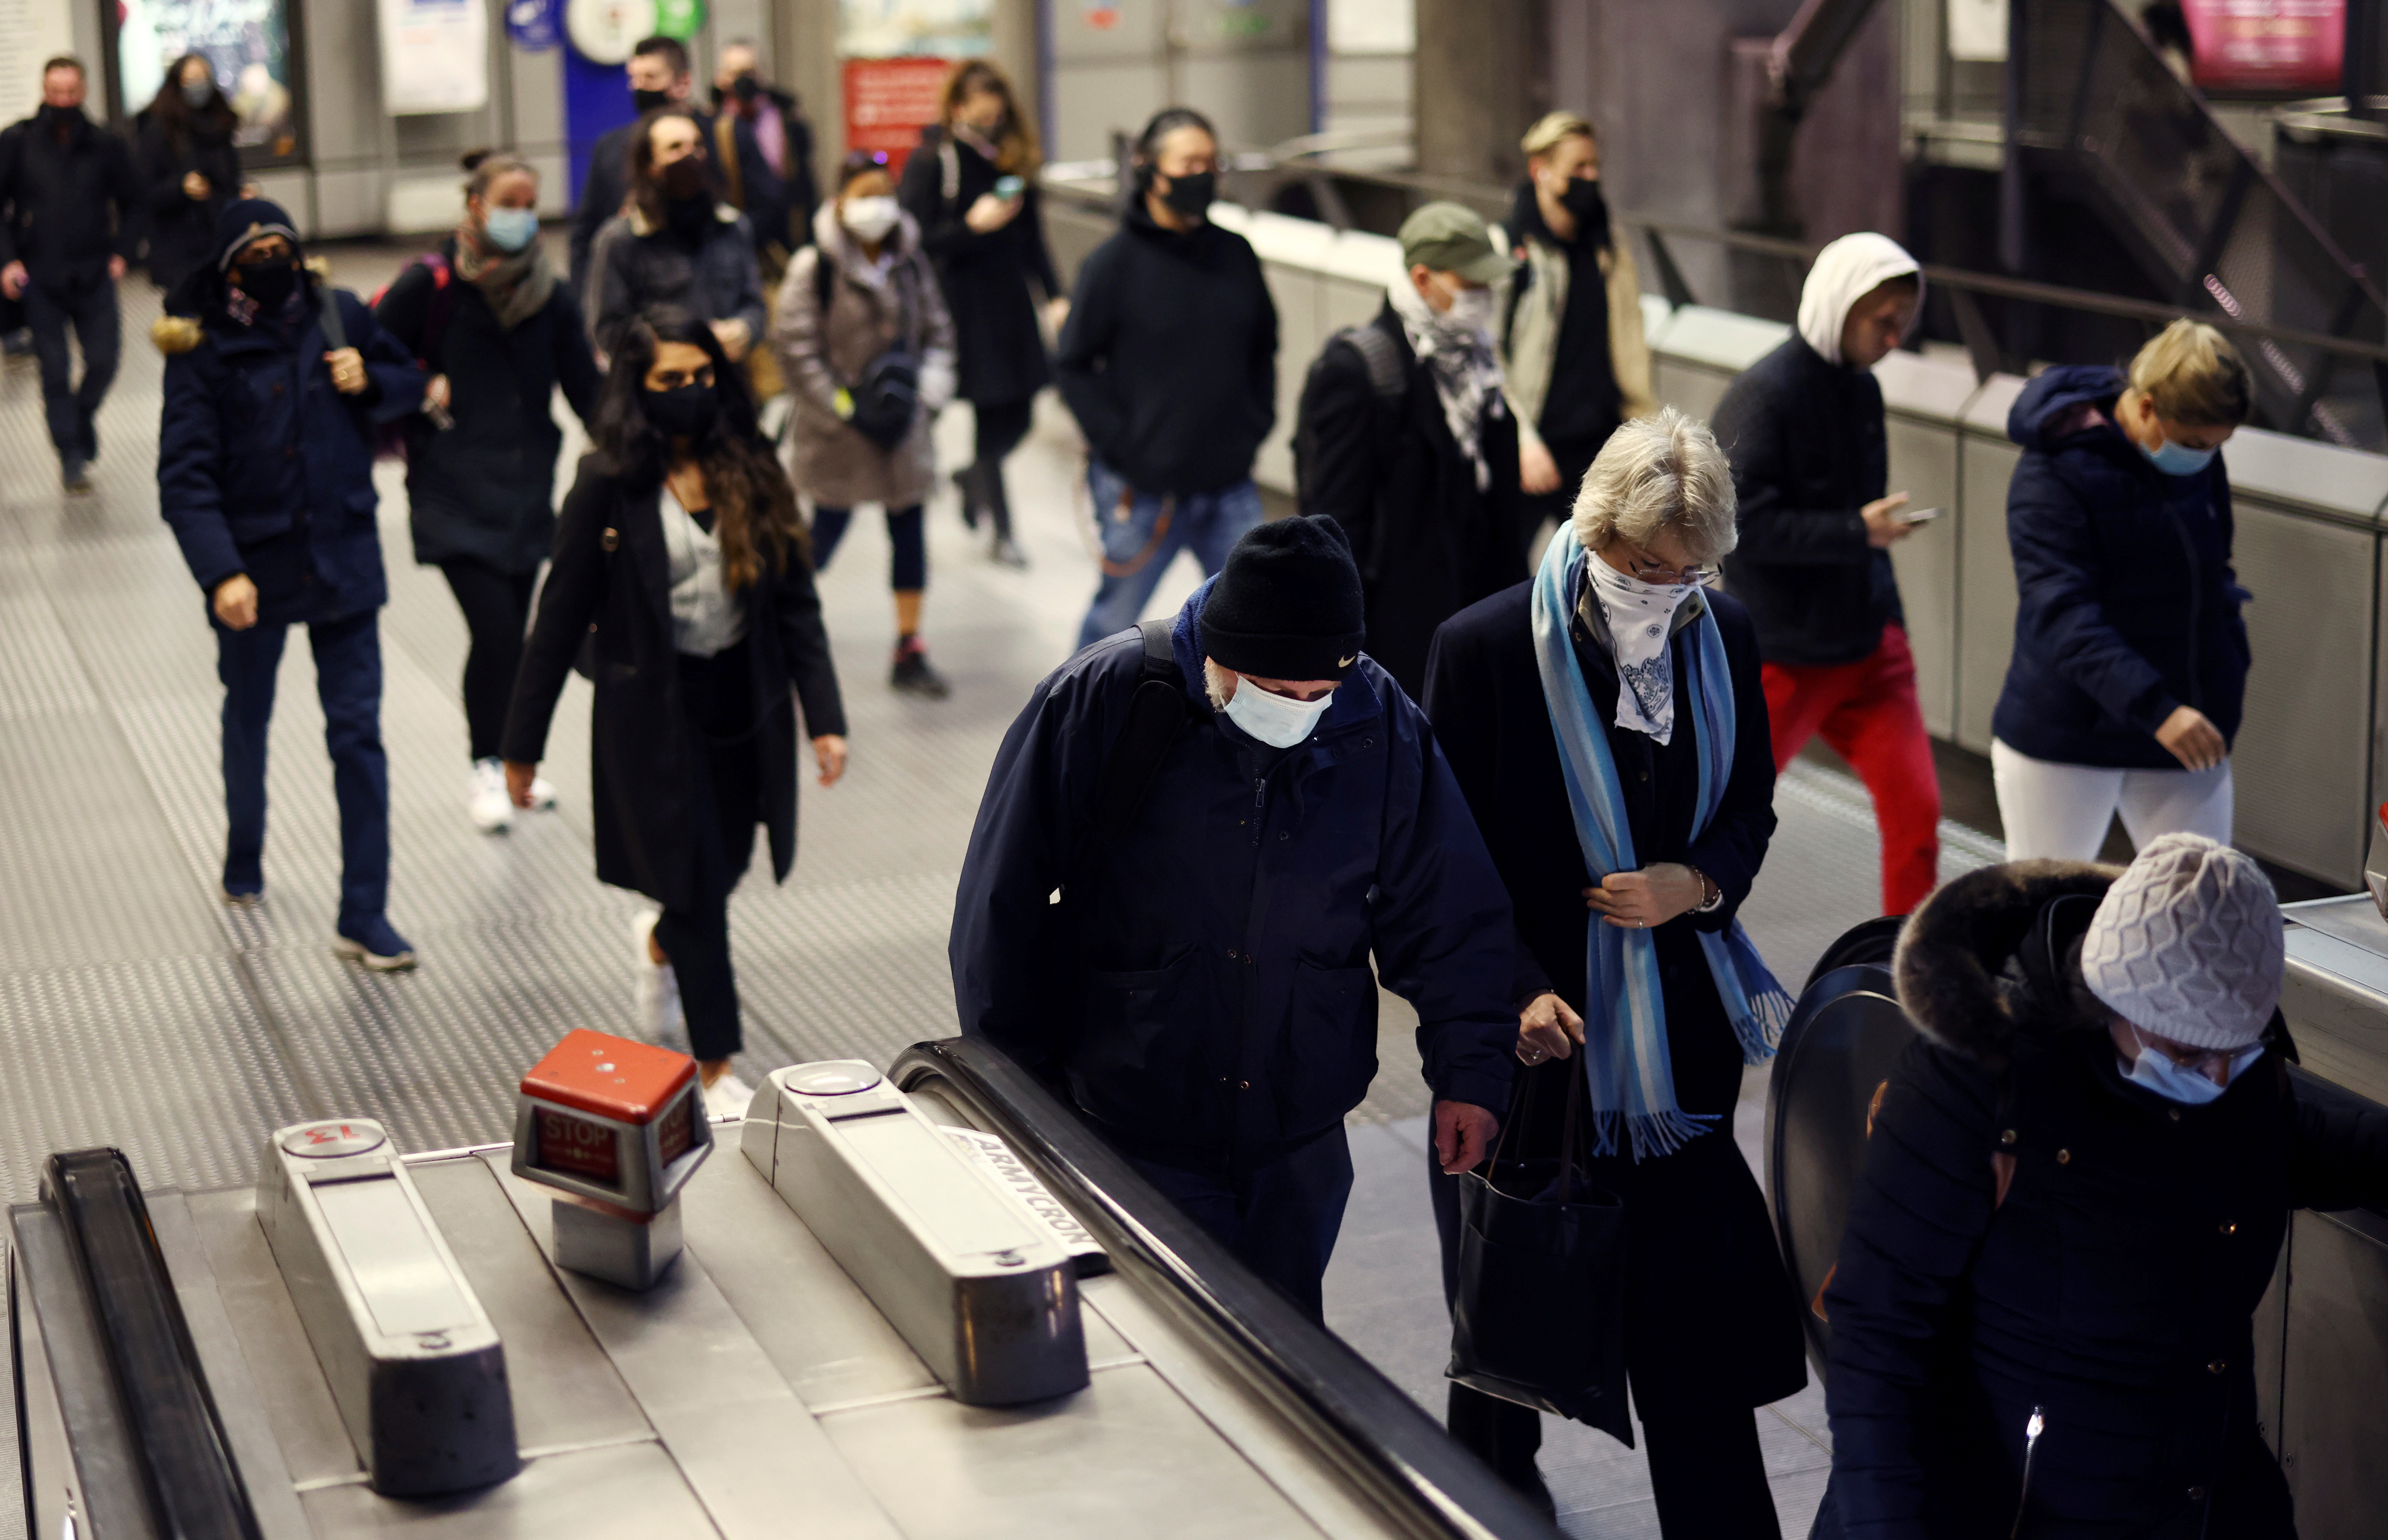 Οι άνθρωποι περπατούν από το σταθμό του υπόγειου σιδηρόδρομου Westminster κατά τη διάρκεια της πρωινής ώρας αιχμής, εν μέσω της επιδημίας του κοροναϊού (COVID-19) στο Λονδίνο, Βρετανία, 1 Δεκεμβρίου 2021. REUTERS/Henry Nicholls